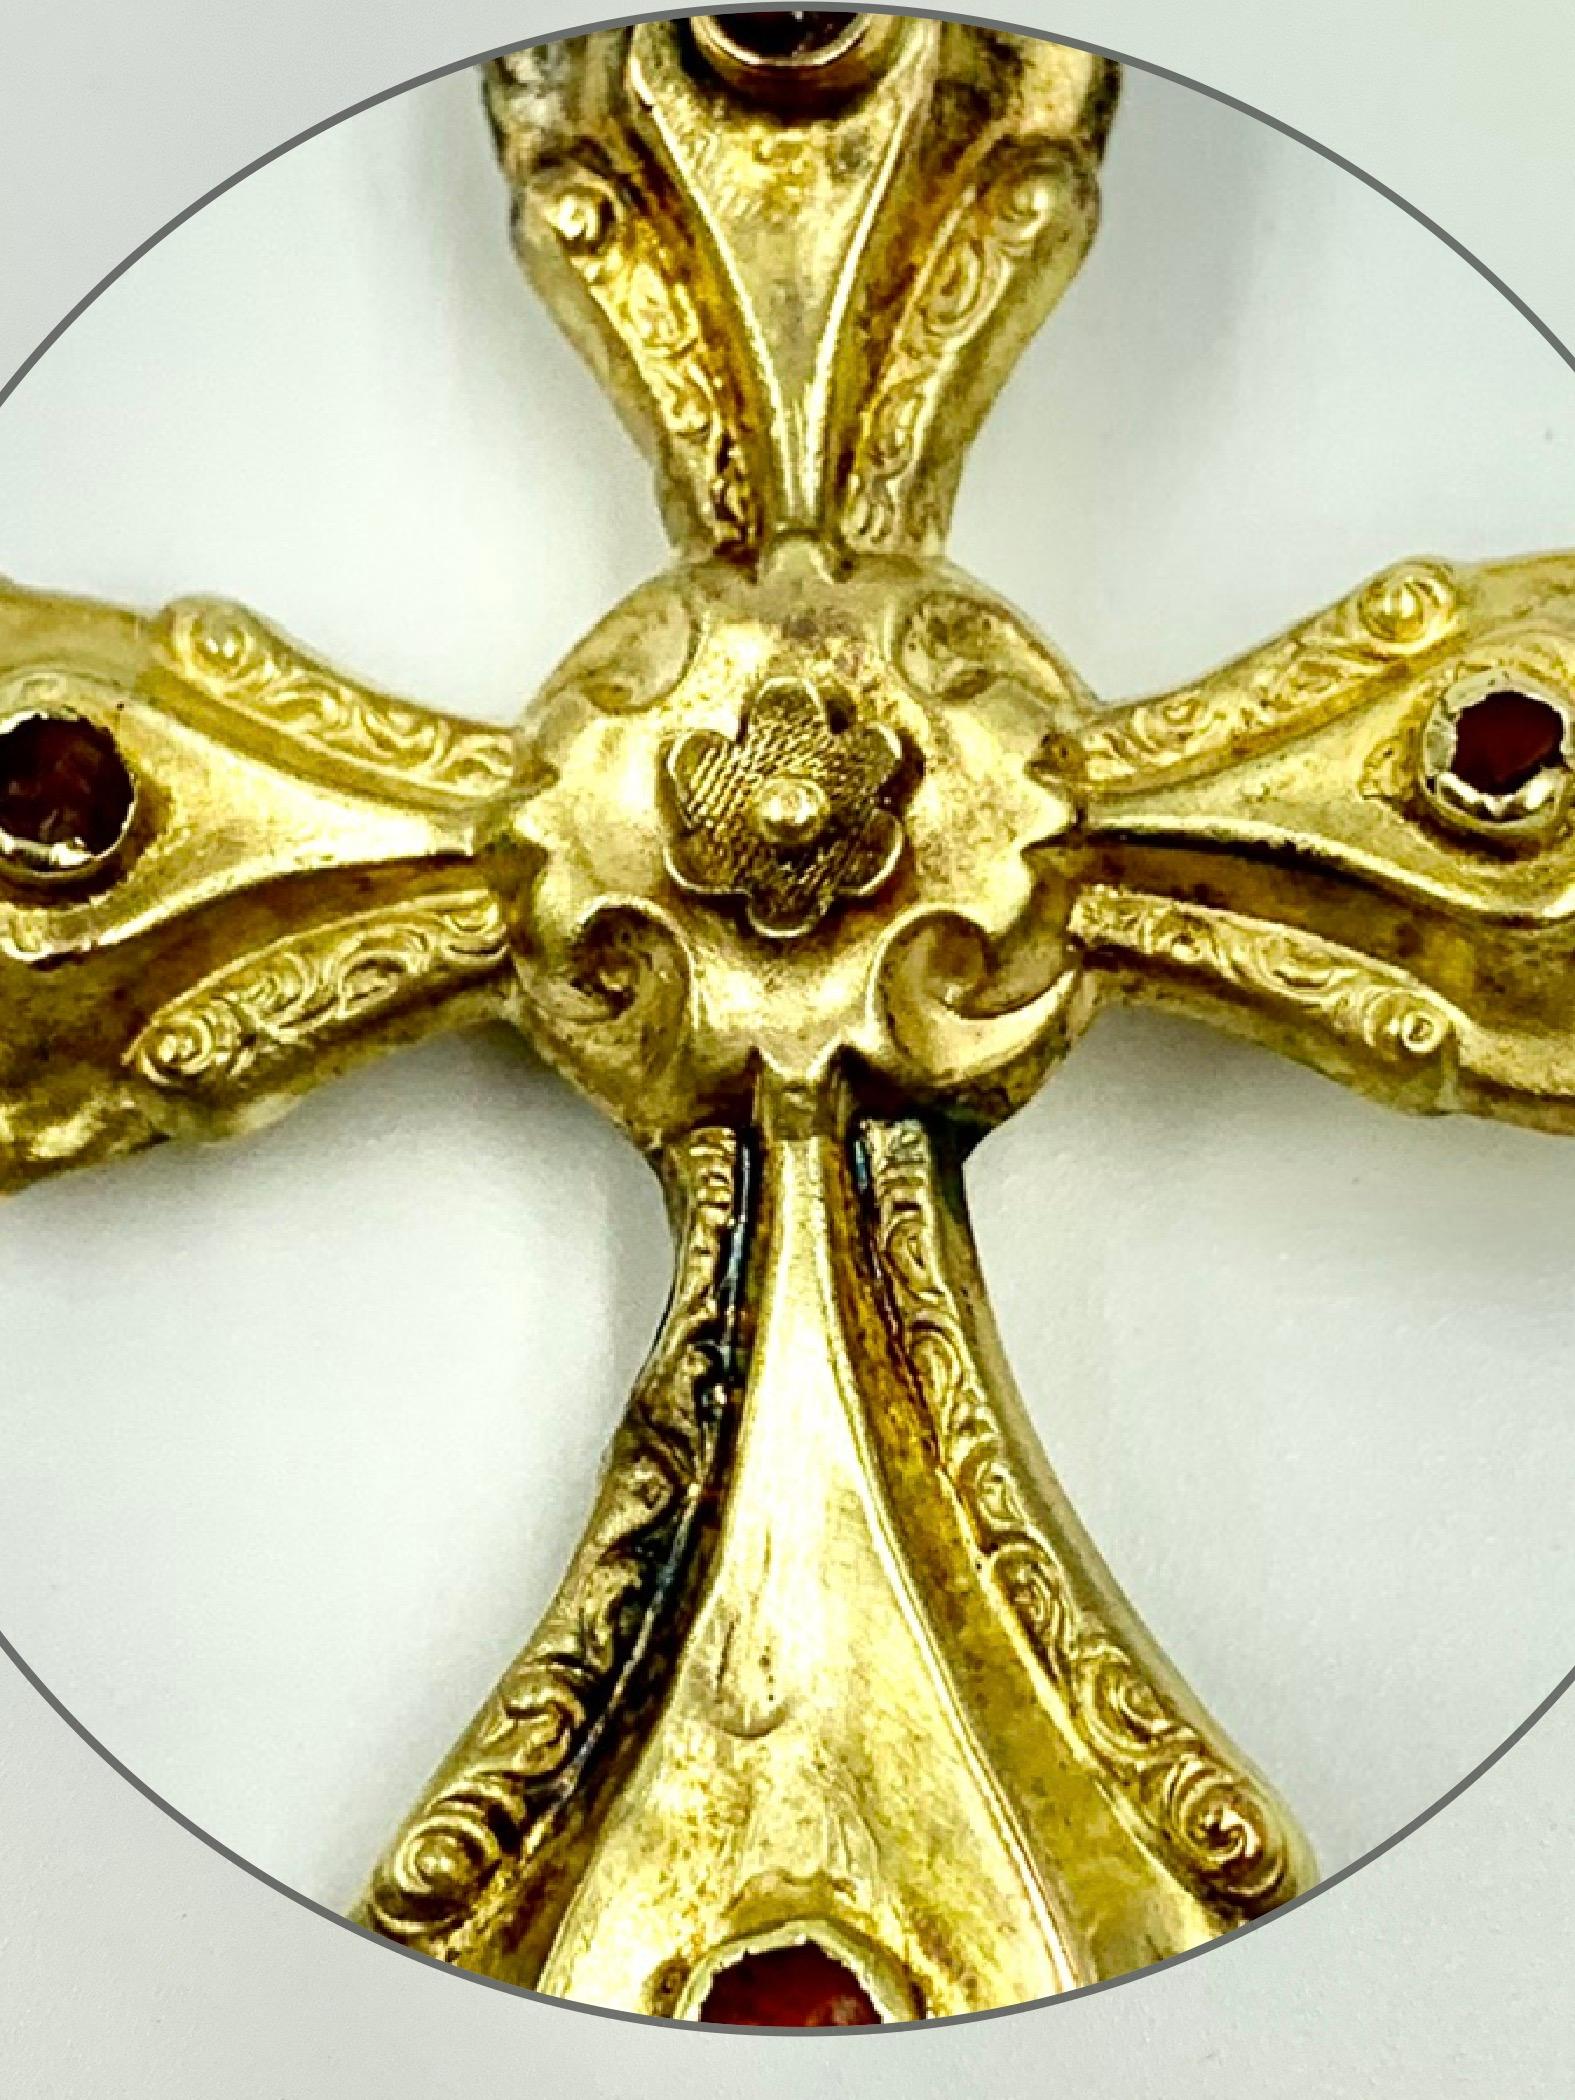 Verziertes Goldkreuz in Museumsqualität aus der Barockzeit mit Rondellen aus Cabochon-Karneol auf jedem Arm und einer eingravierten floralen Mitte, die eine stilisierte Rose darstellt. 
17. Jahrhundert
Die Rose ist ein Symbol des Rosenkreuzertums,